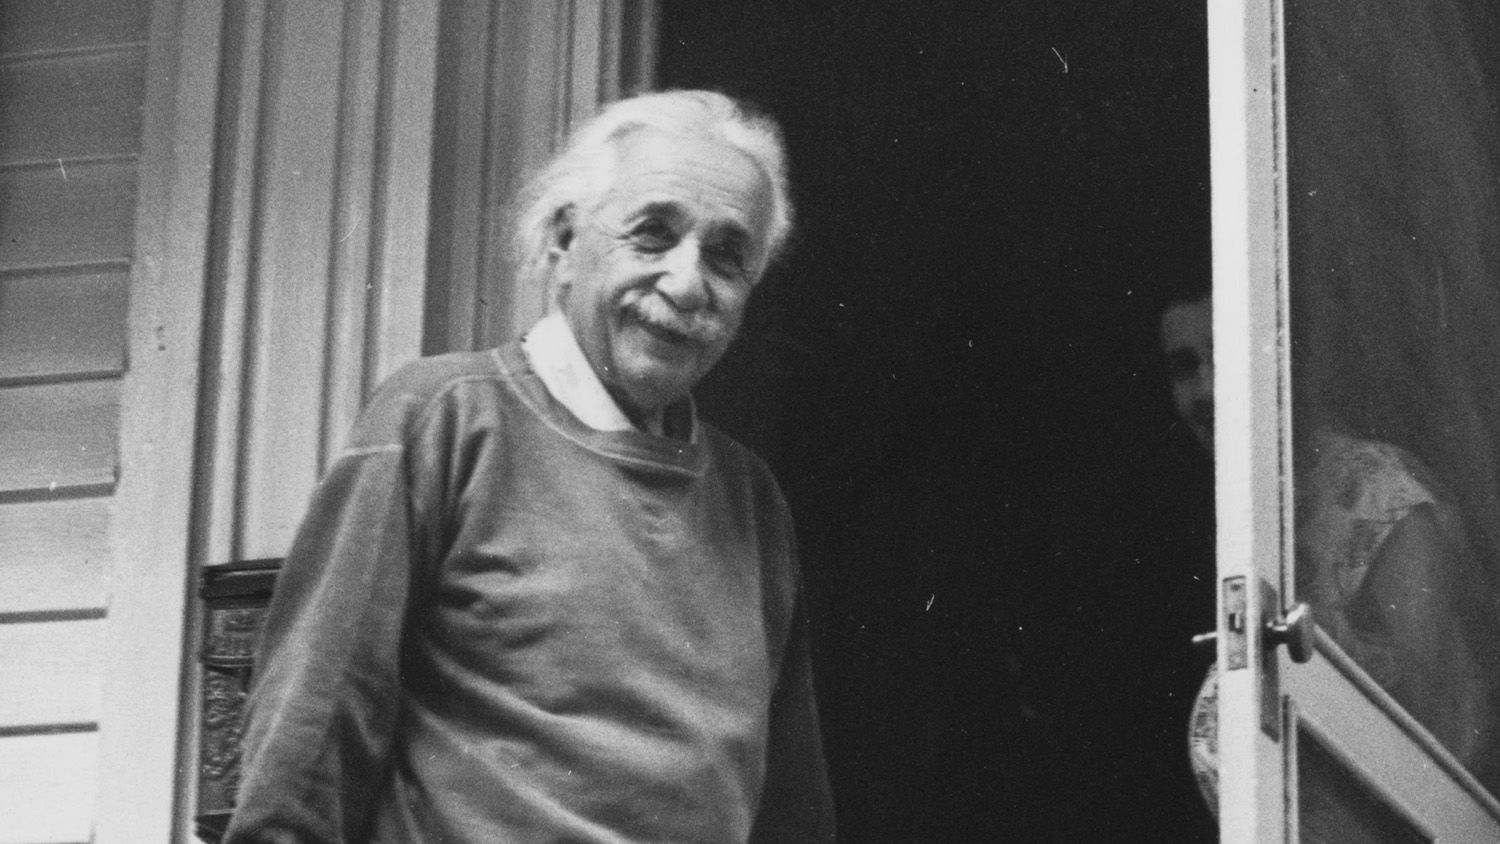 Tizenöt évesen egyedül kiment Amerikába a magyar fiú, aztán egyszer csak Einsteinnél találta magát – most meg elmesélte az egészet